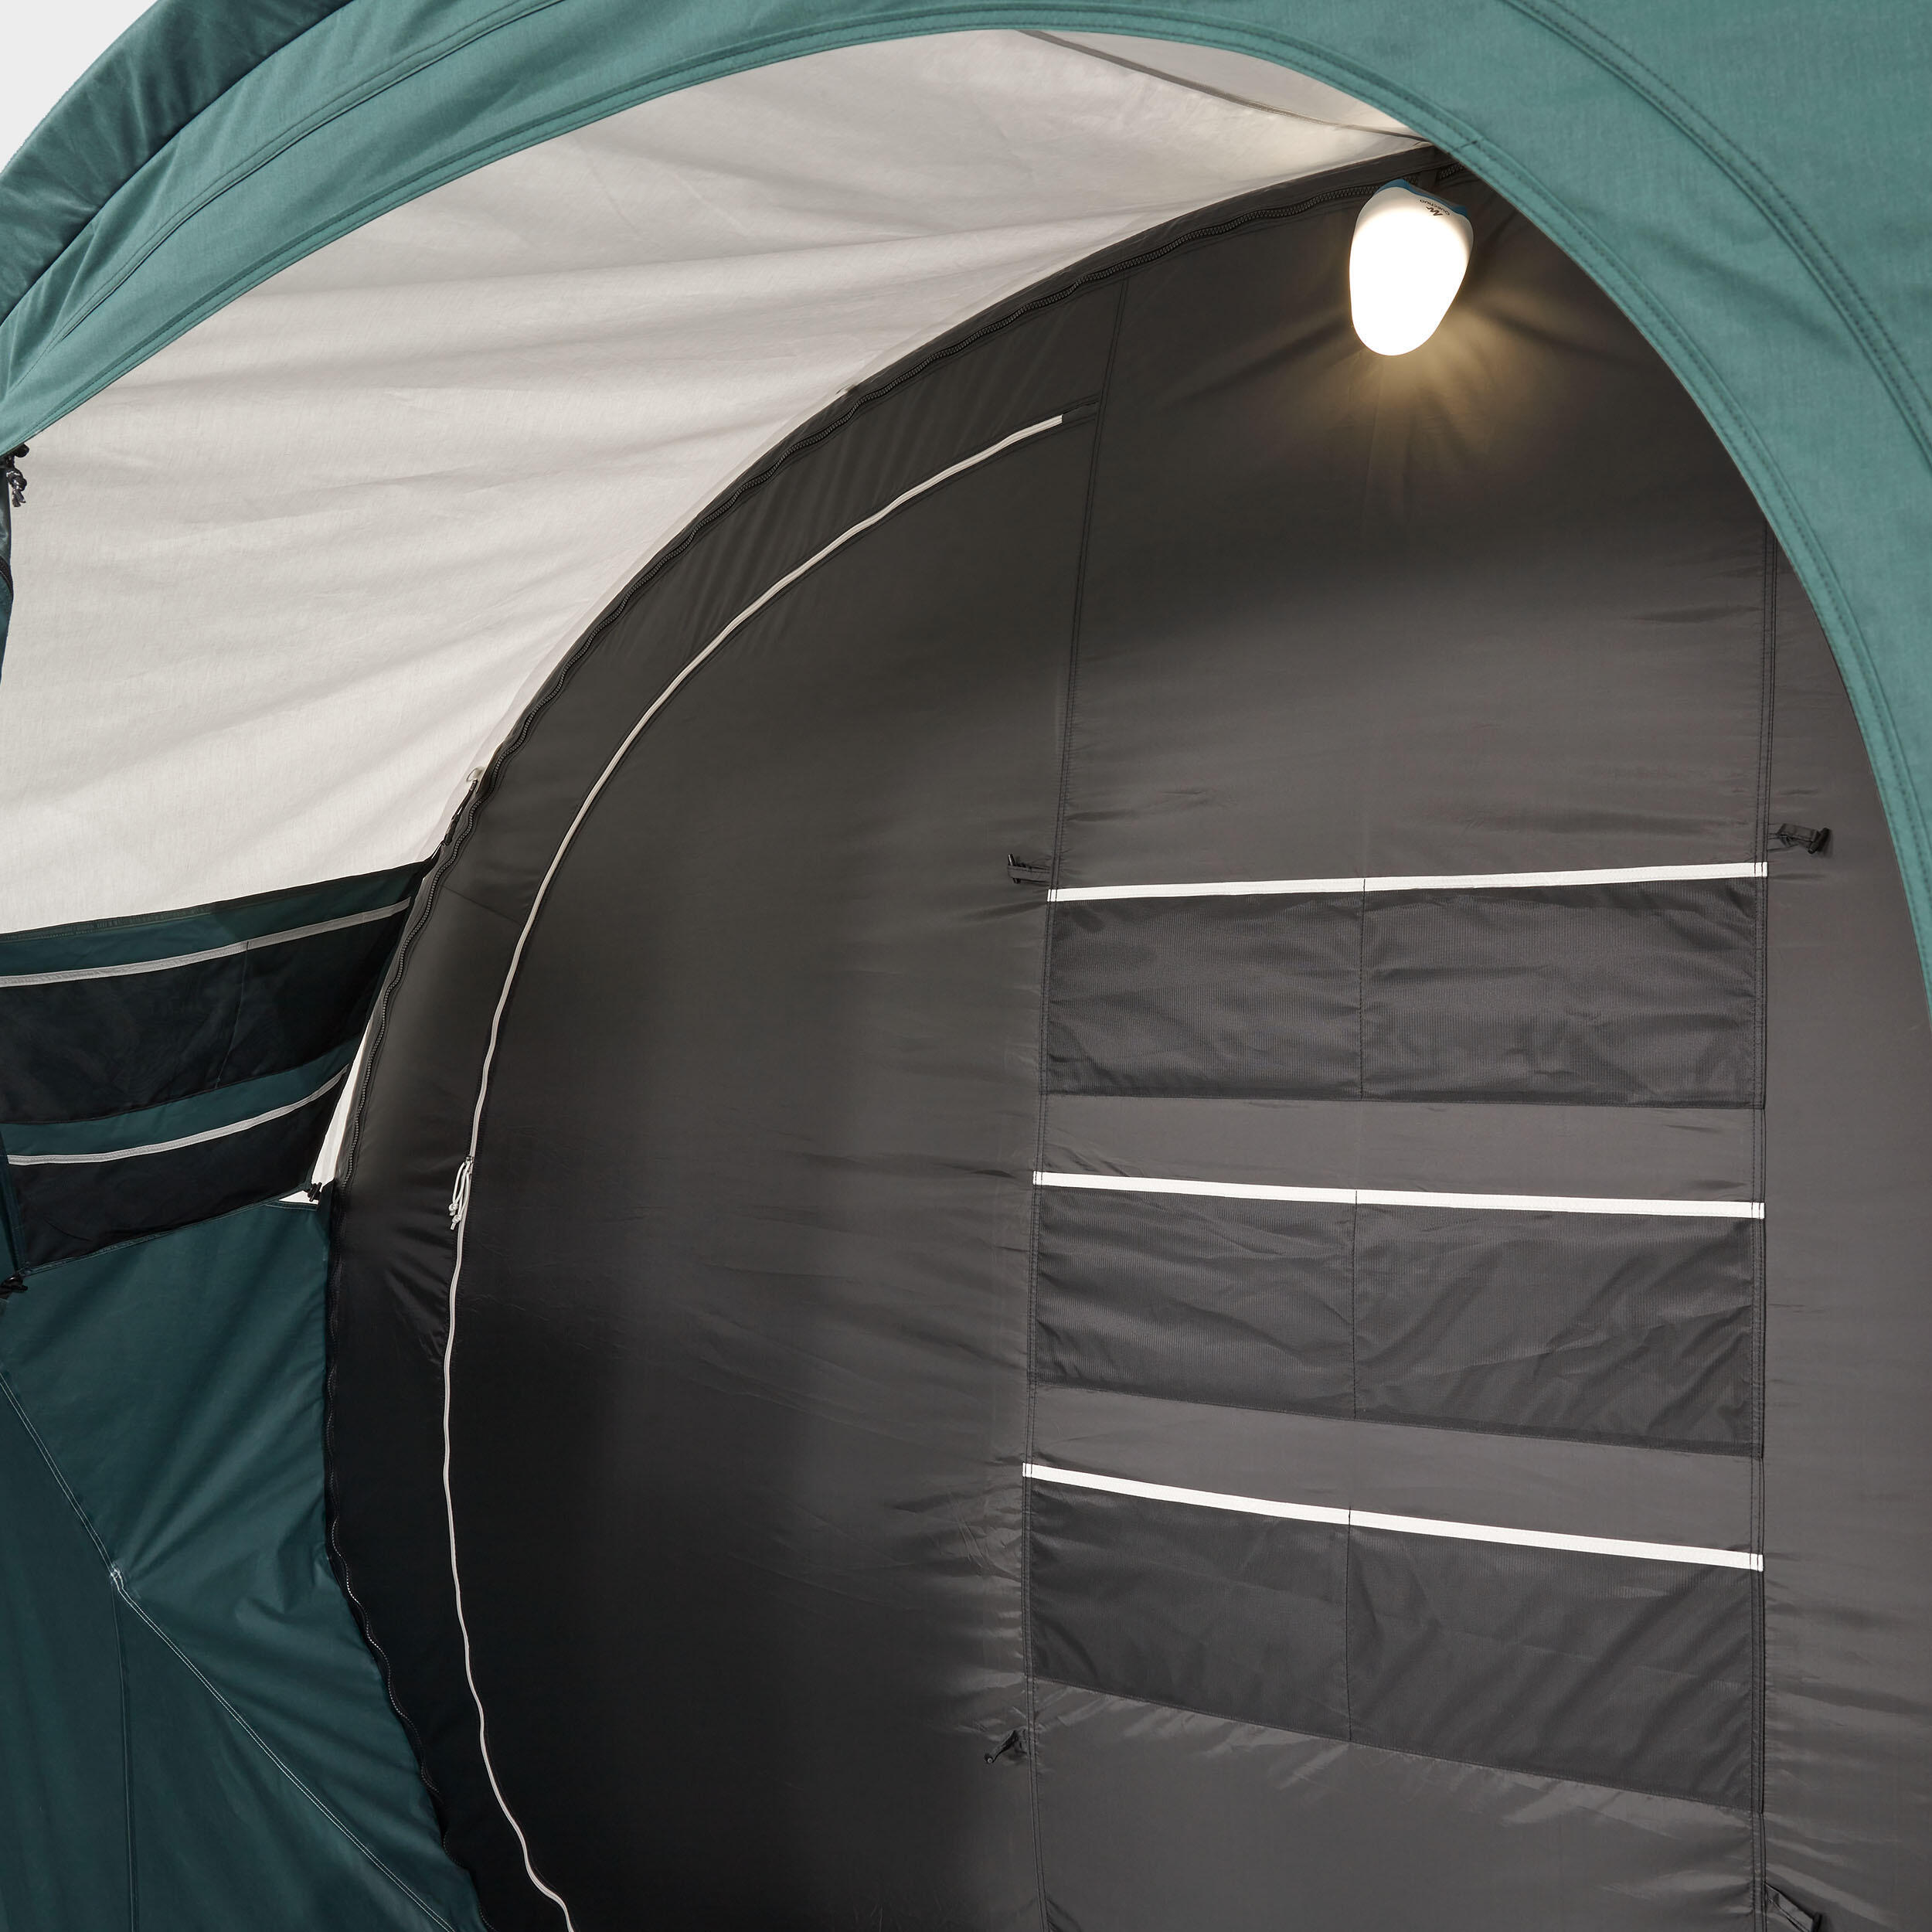 Le sas de décompression pour entrer dans la tente sans qu’elle se dégonfle a également été un point crucial du design. 